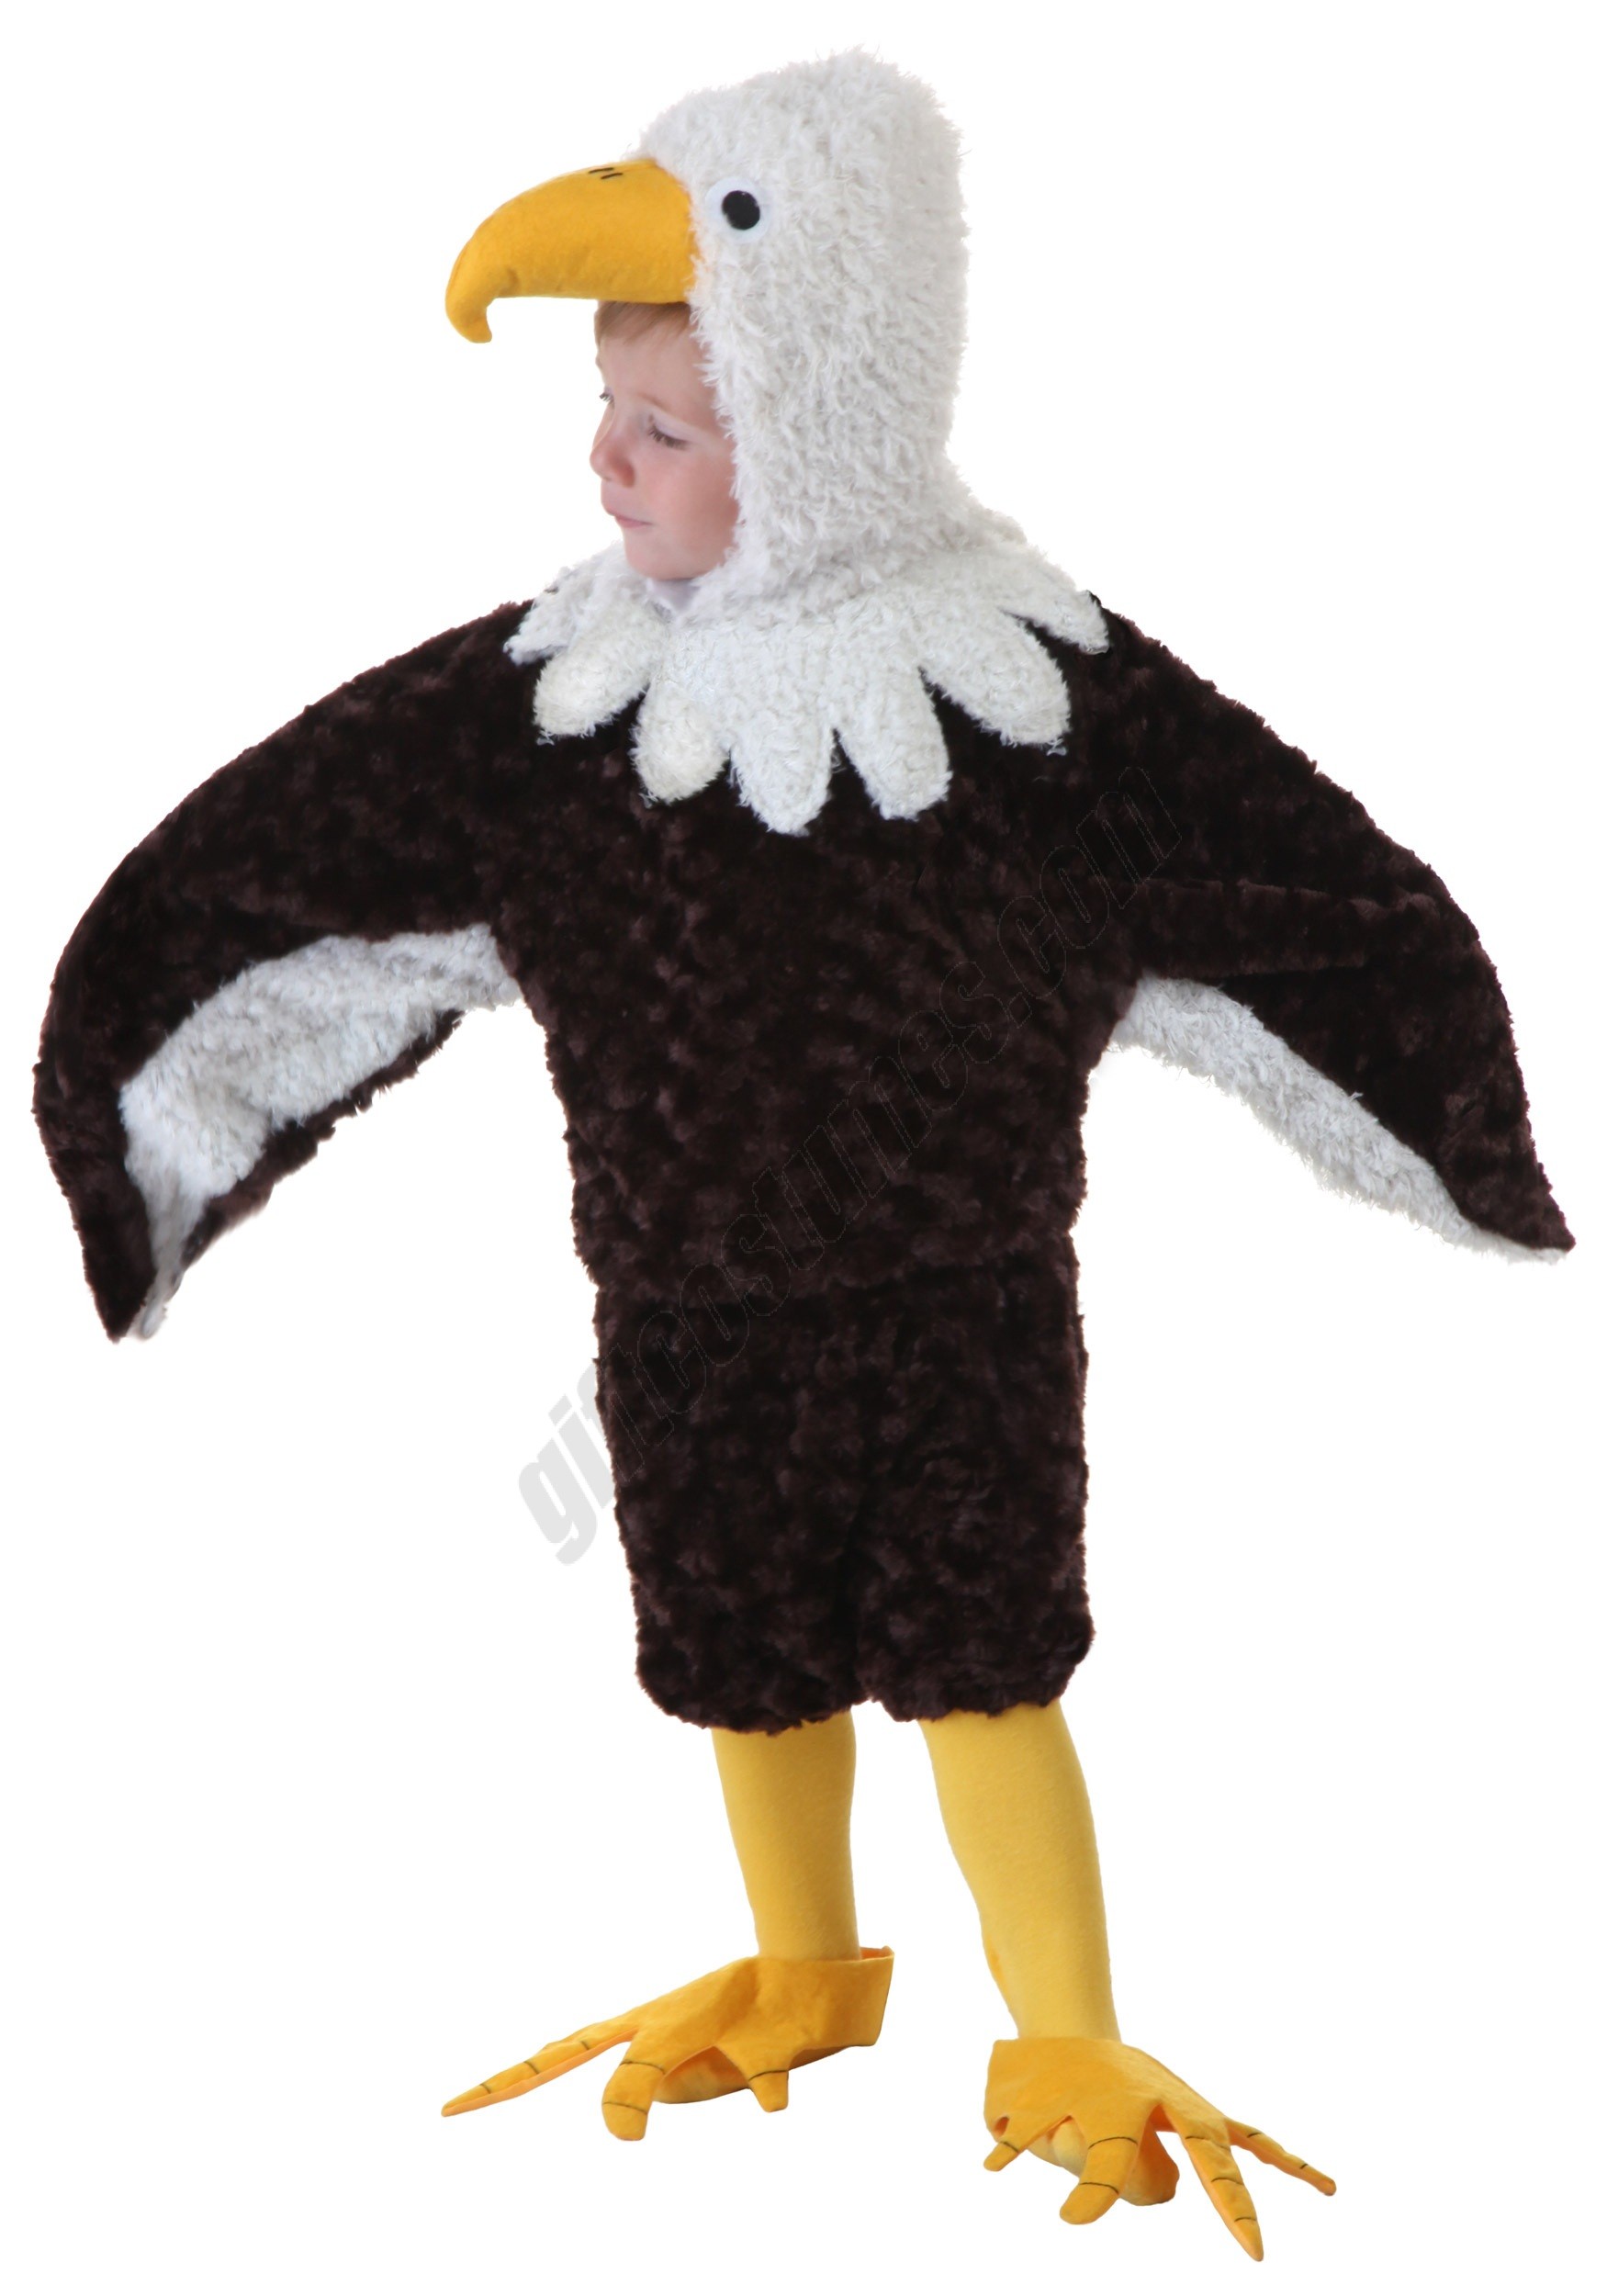 Toddler Eagle Costume Promotions - Toddler Eagle Costume Promotions